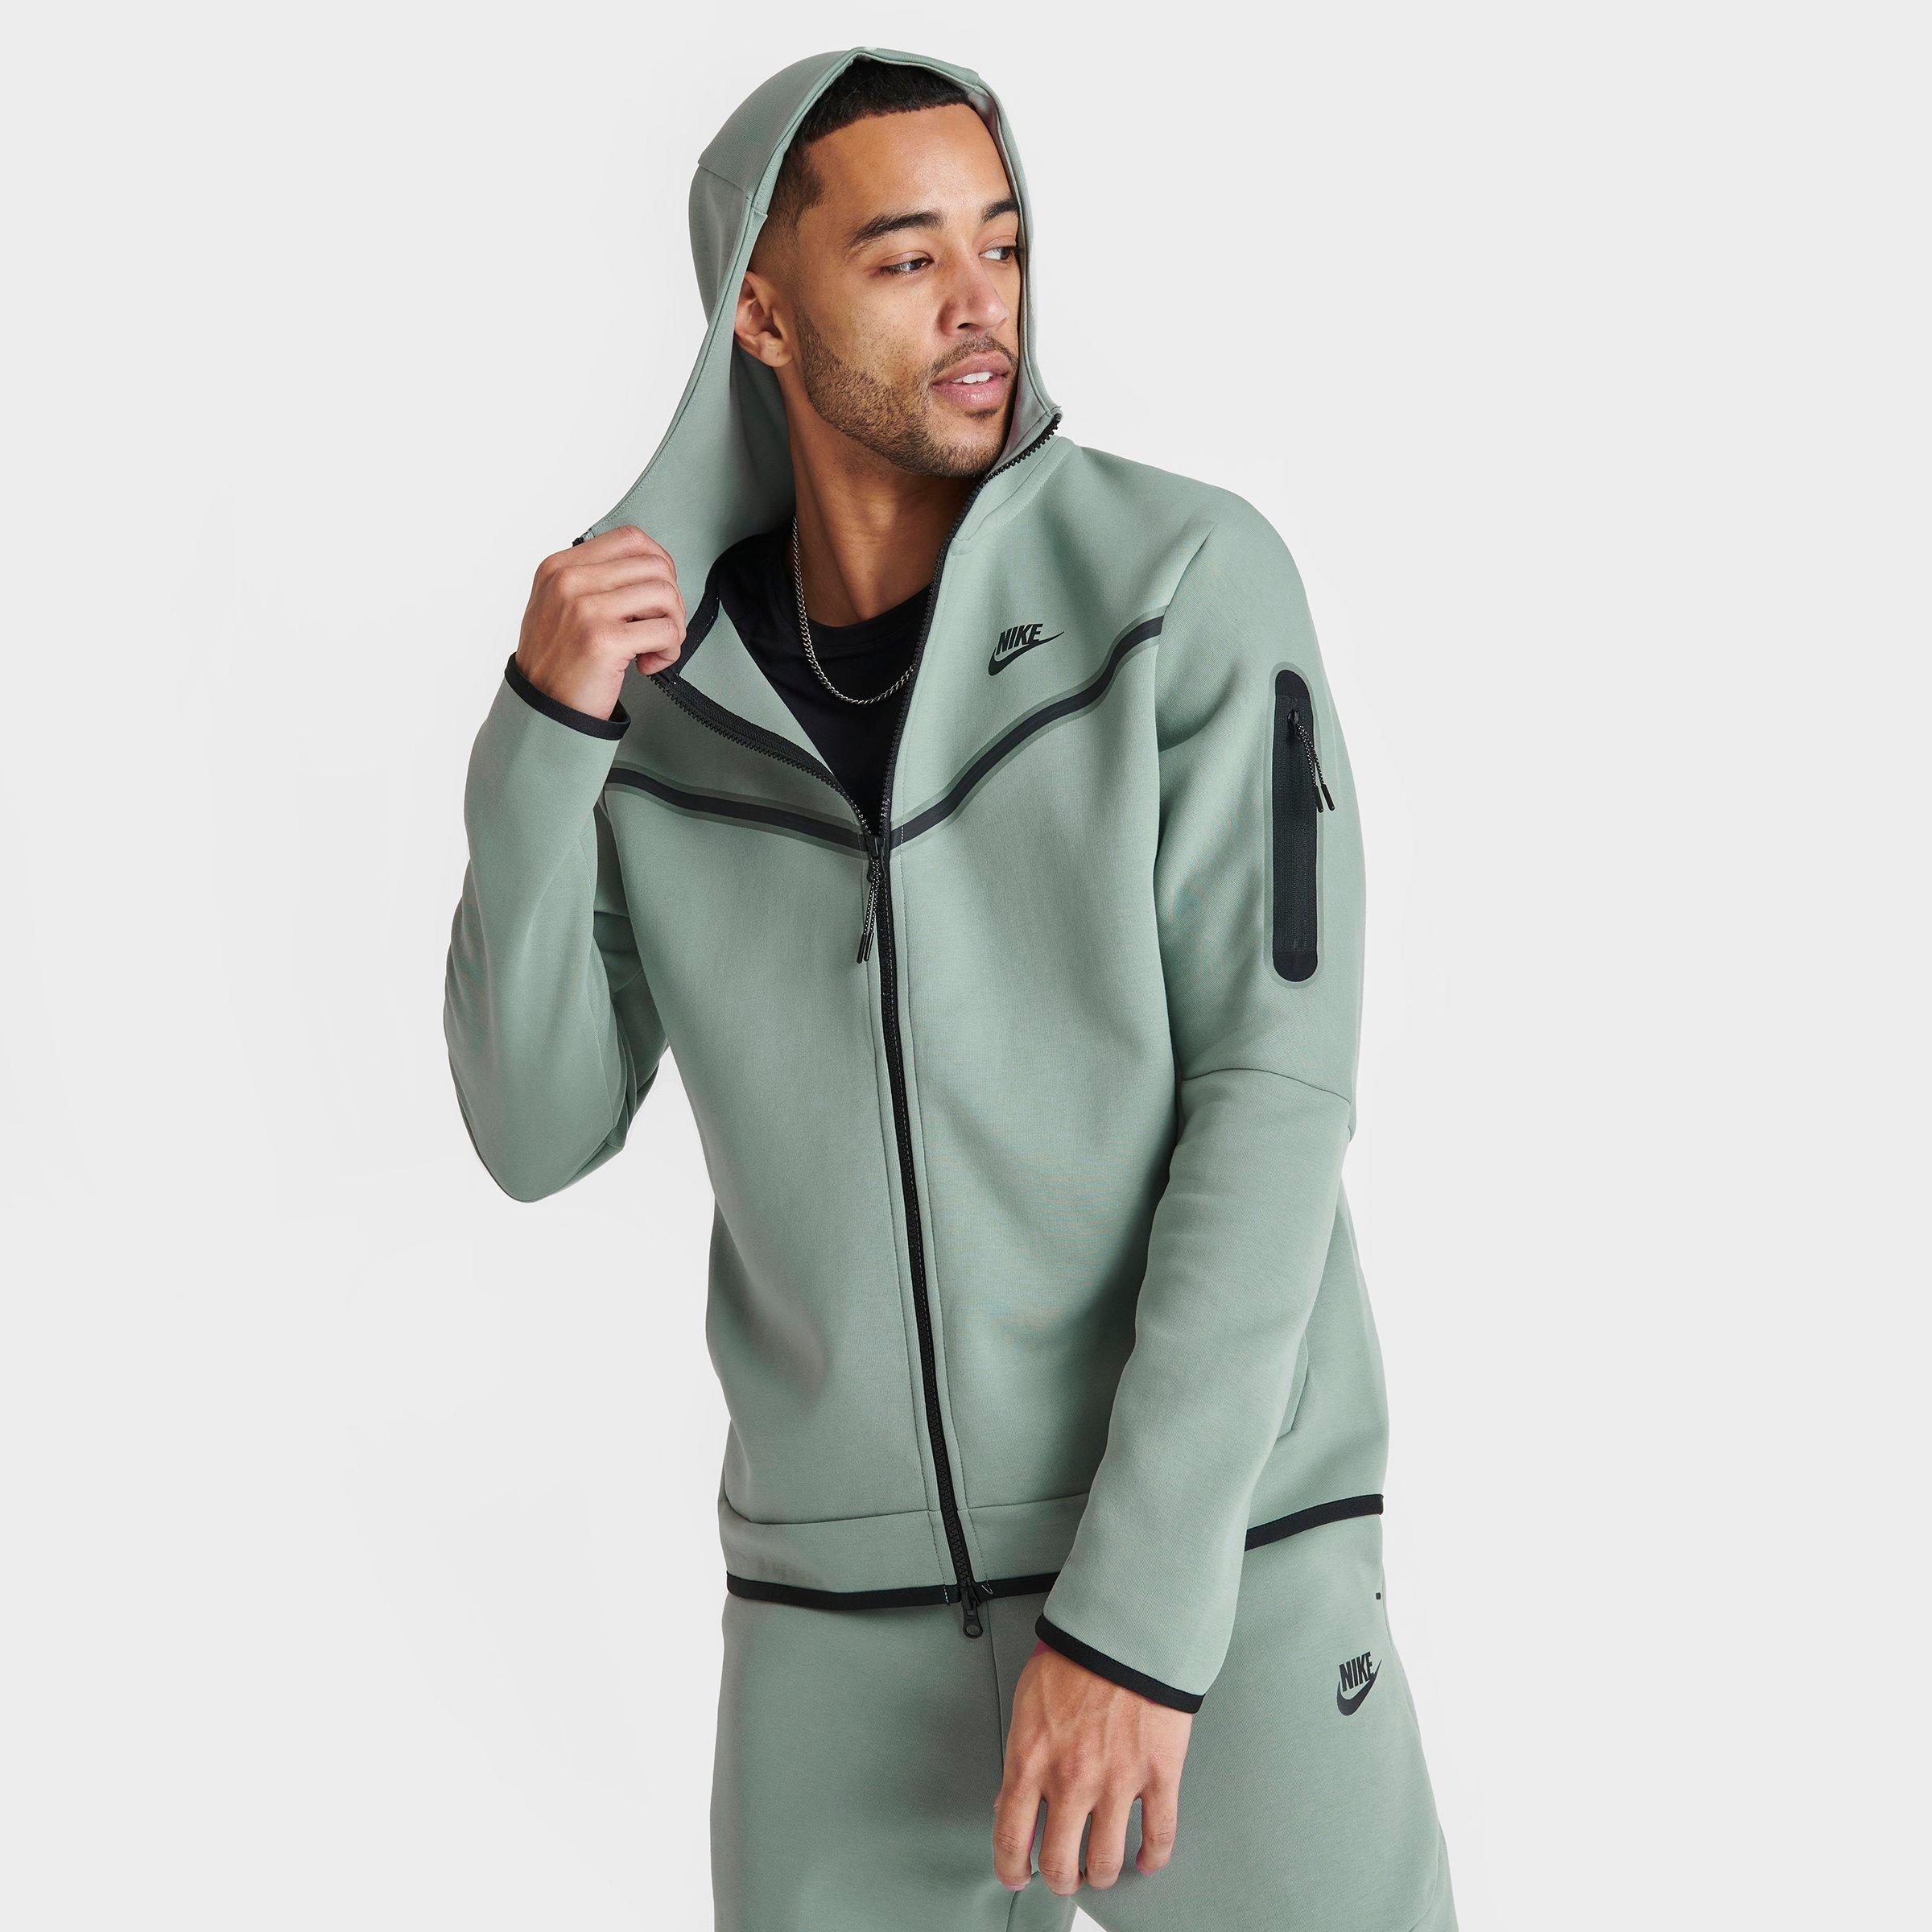 nike men's sportswear just do it fleece zip hoodie